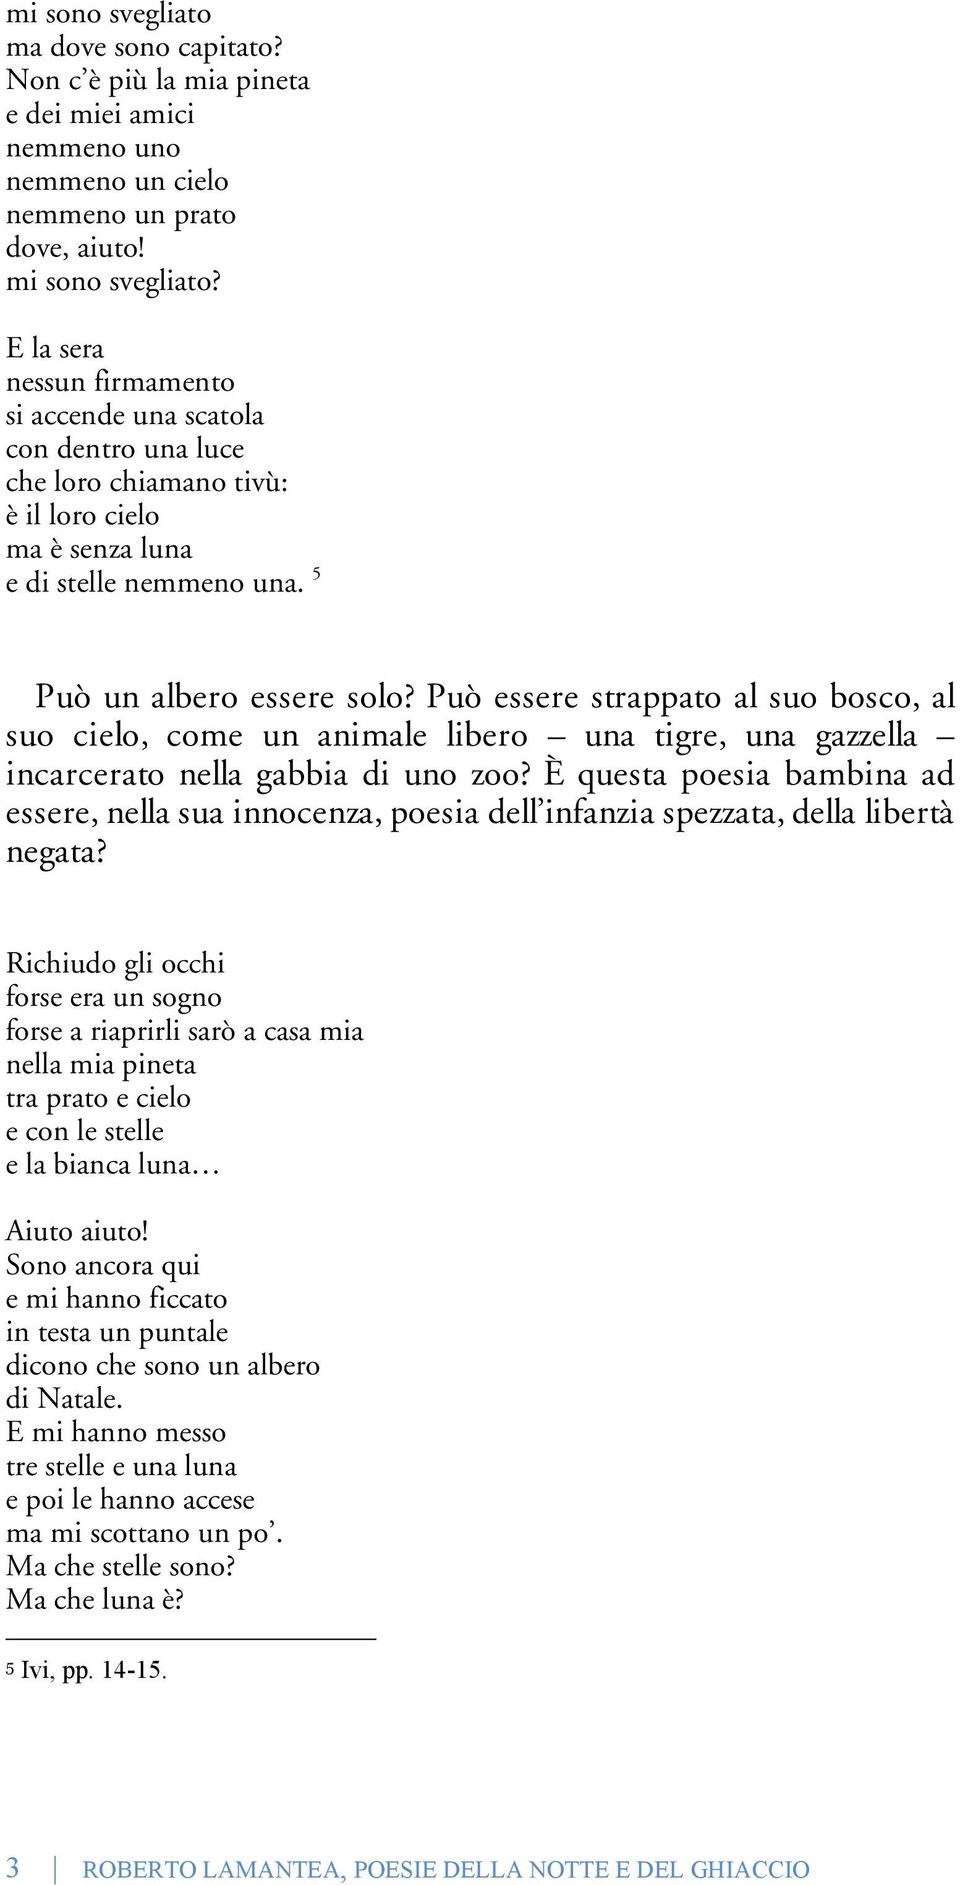 Poesie Facili Di Natale.Poesie Della Notte E Del Ghiaccio Pdf Download Gratuito